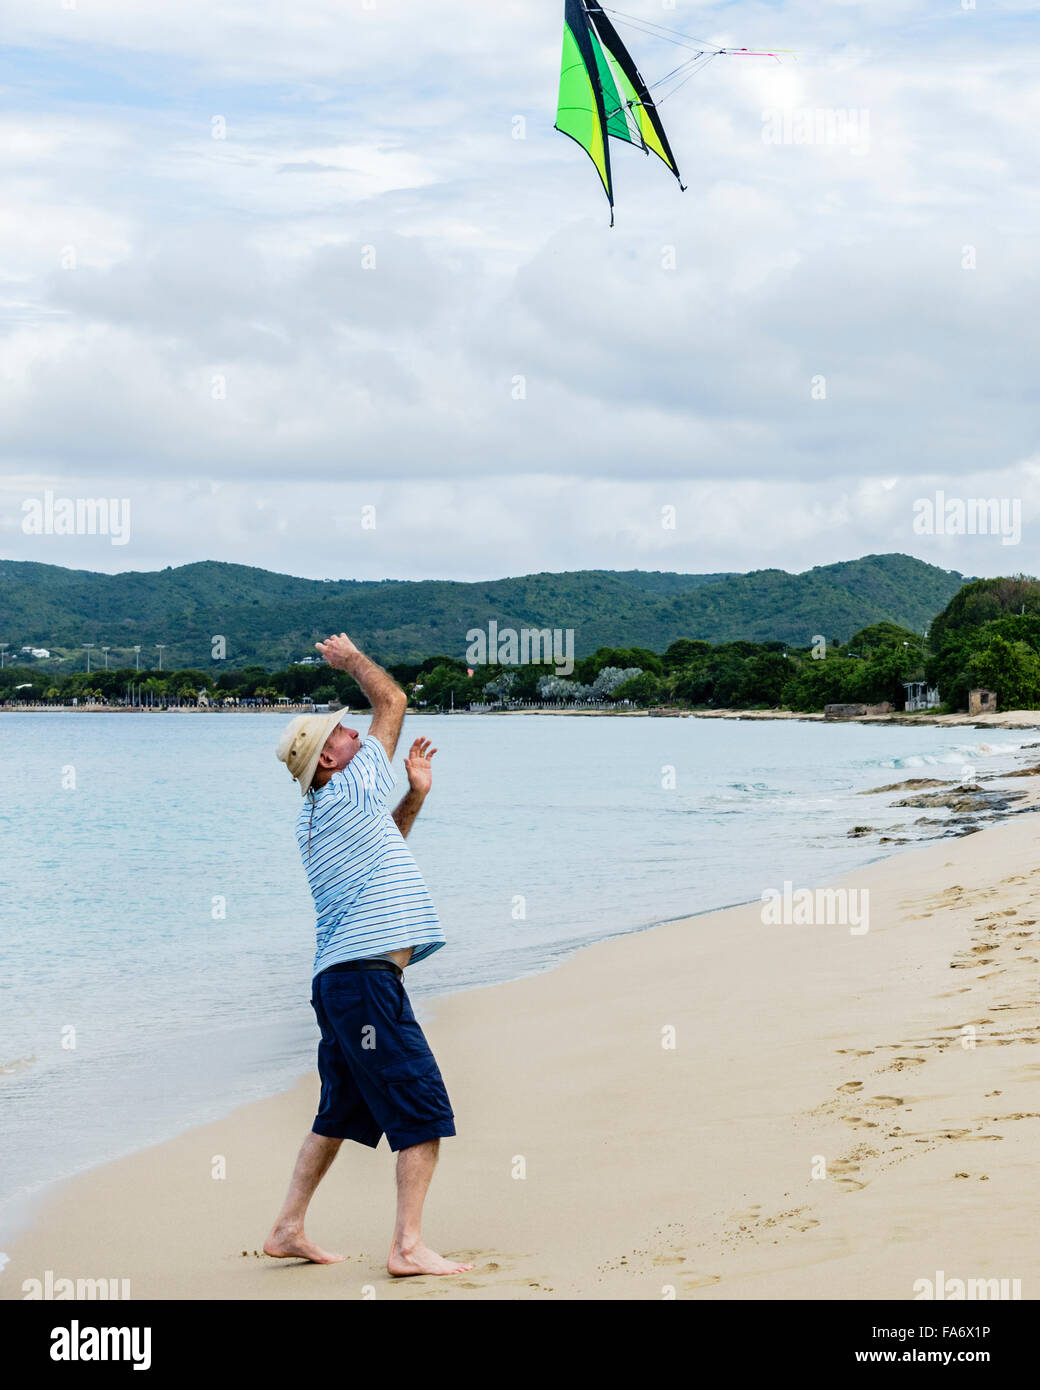 Un hombre caucásico senior lanza una cometa airborne para ayudar a un amigo lanzamiento en la playa de Saint Croix, Islas Vírgenes de EE.UU. Foto de stock